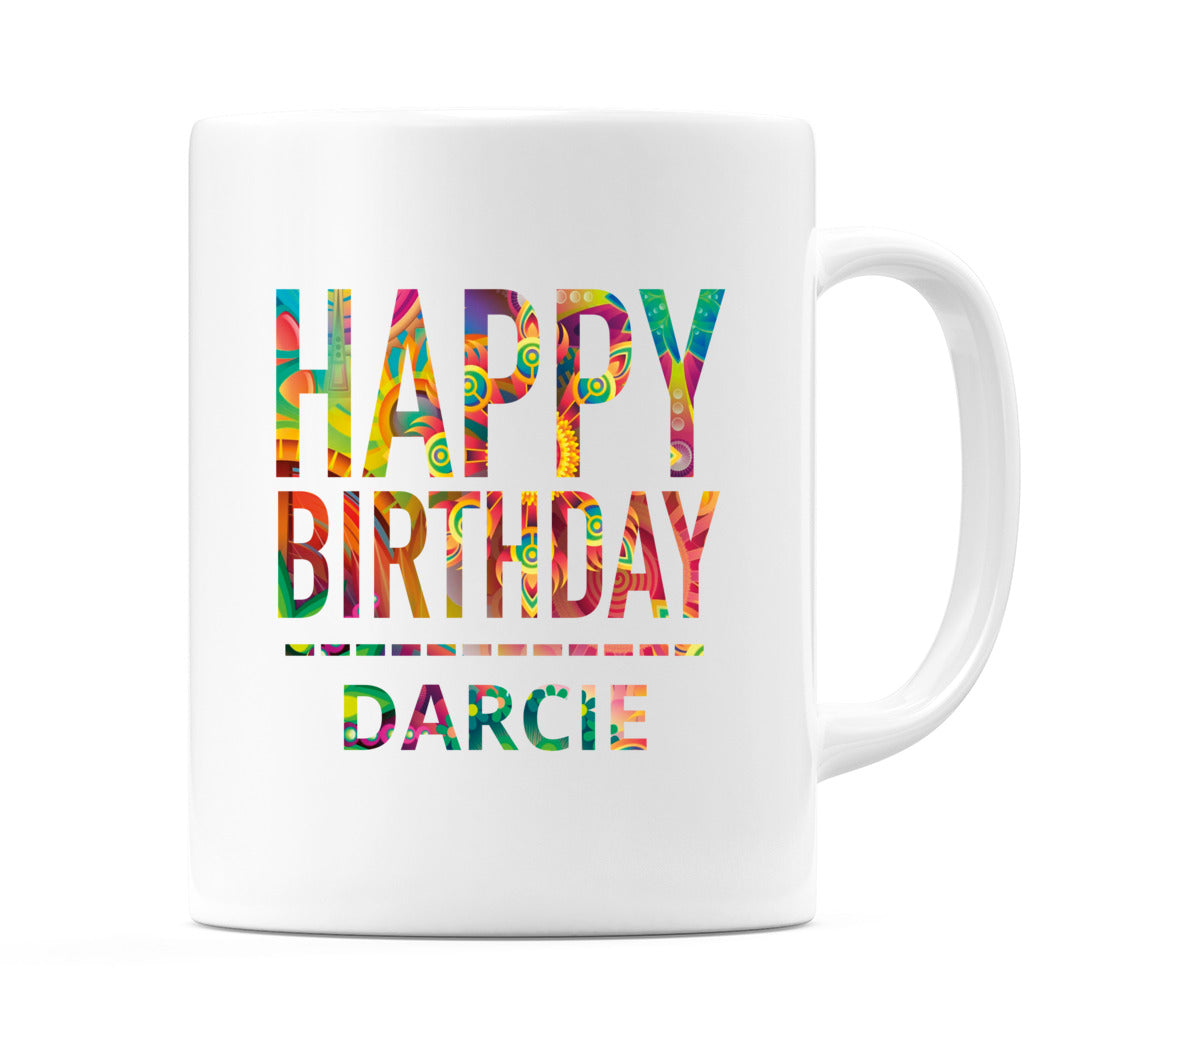 Happy Birthday Darcie (Tie Dye Effect) Mug Cup by WeDoMugs